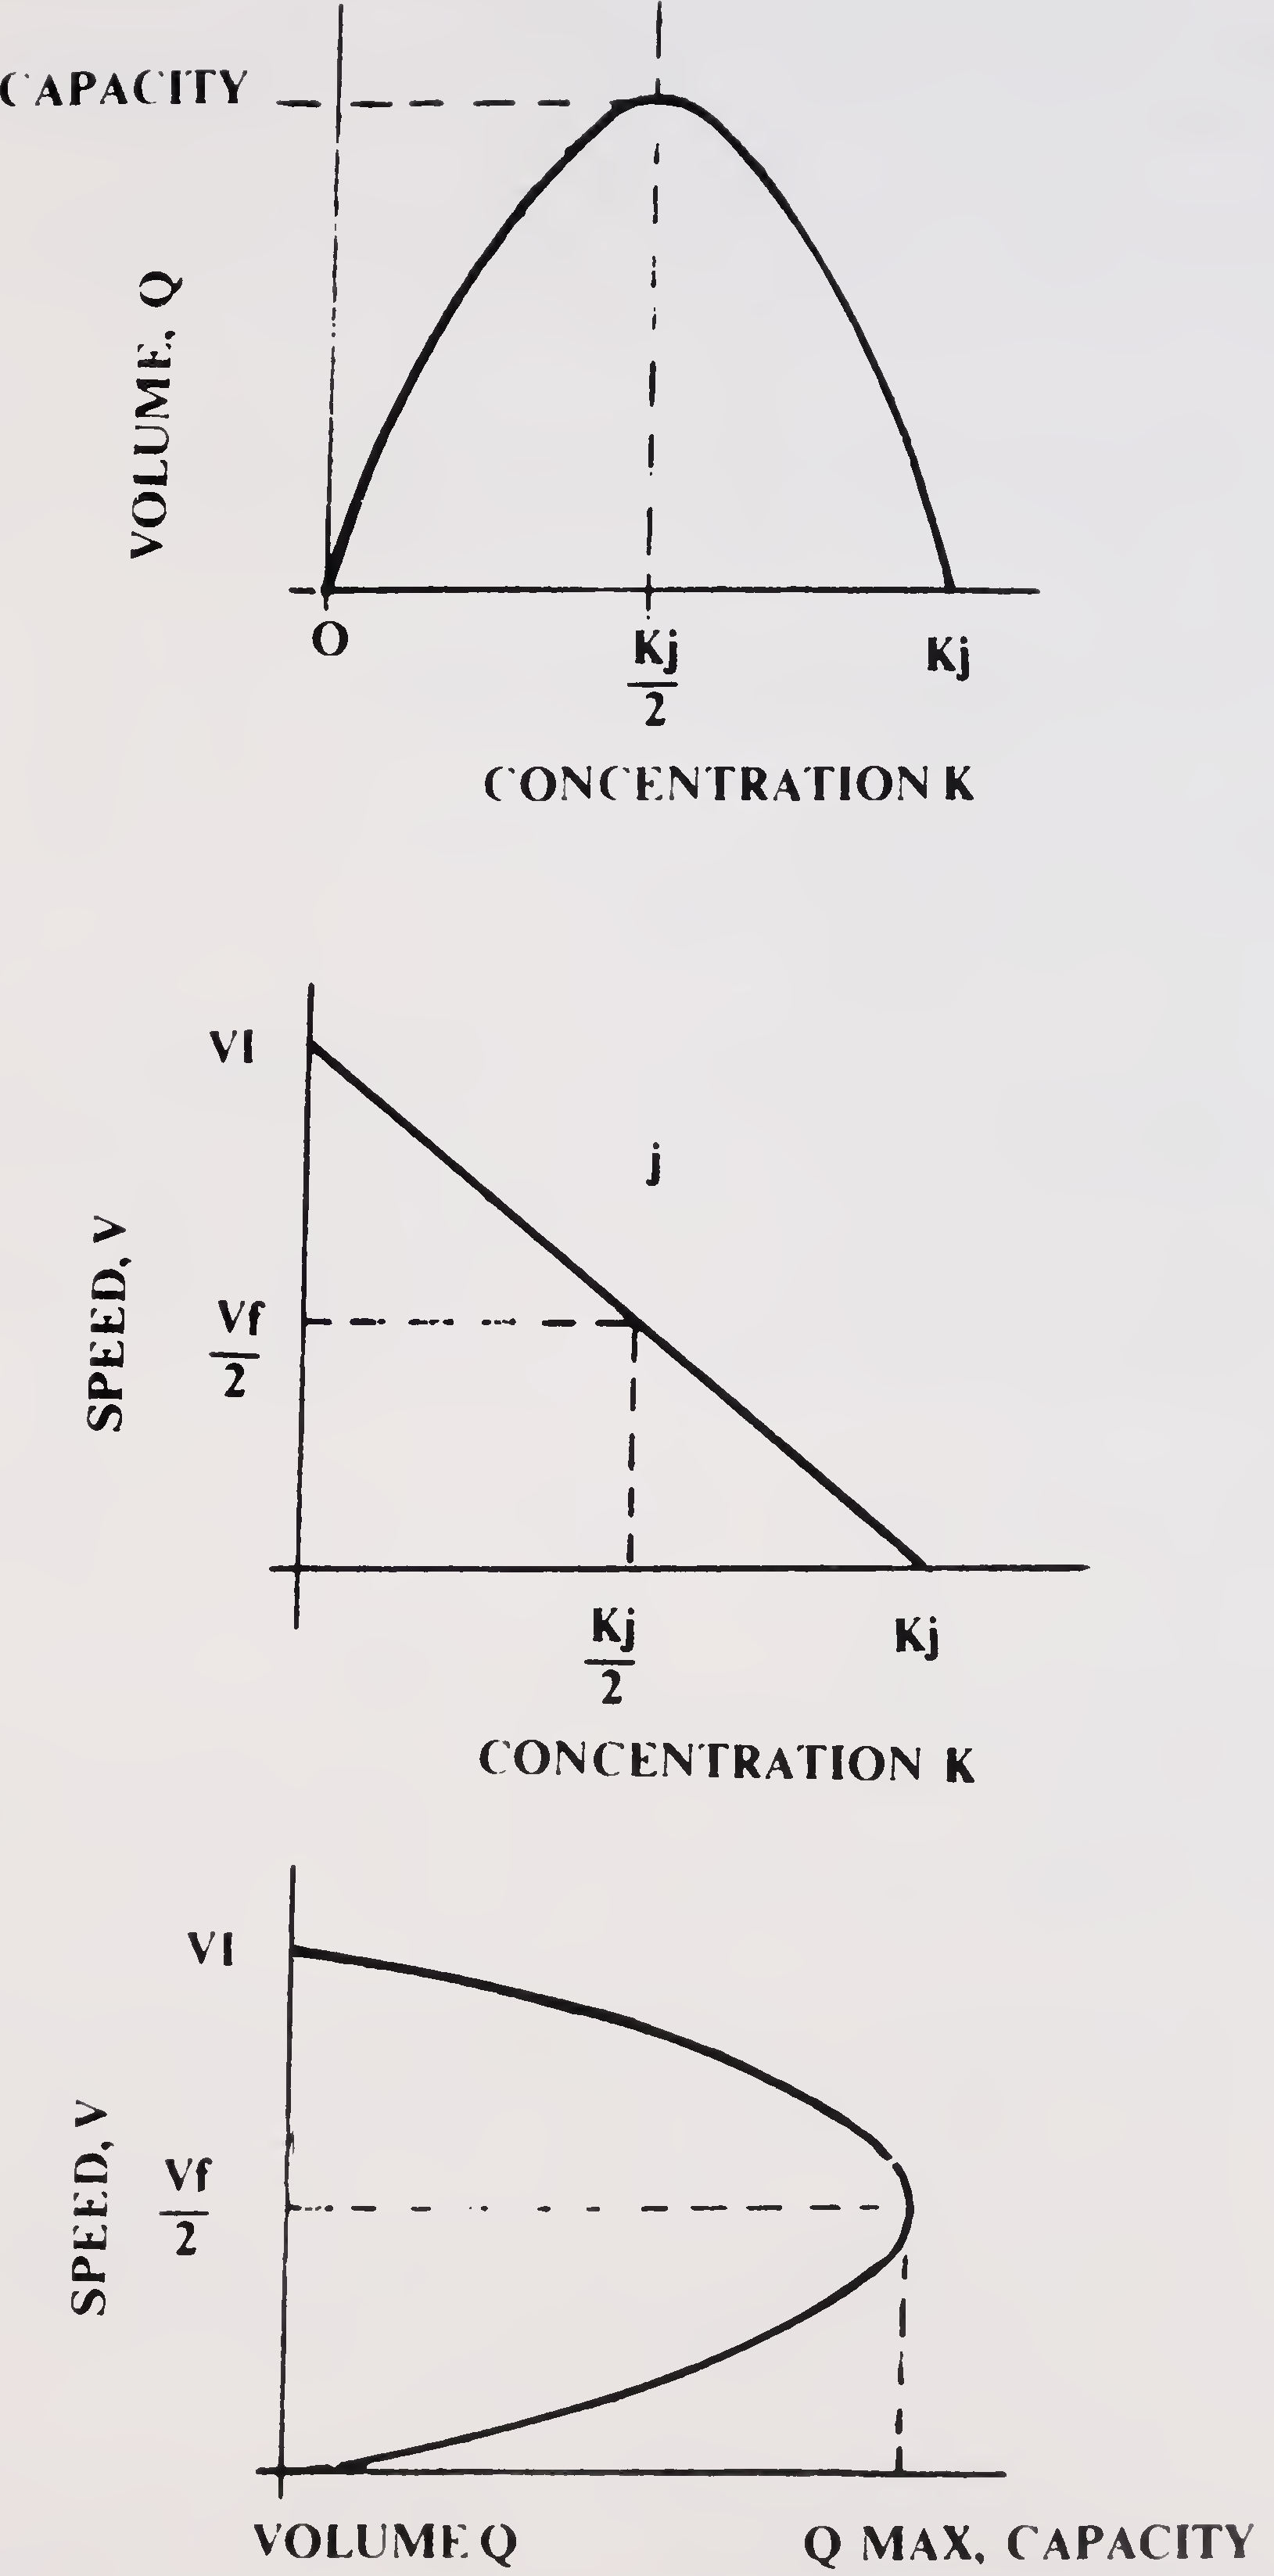 Fig. 1. Fundamental diagram of traffic flow